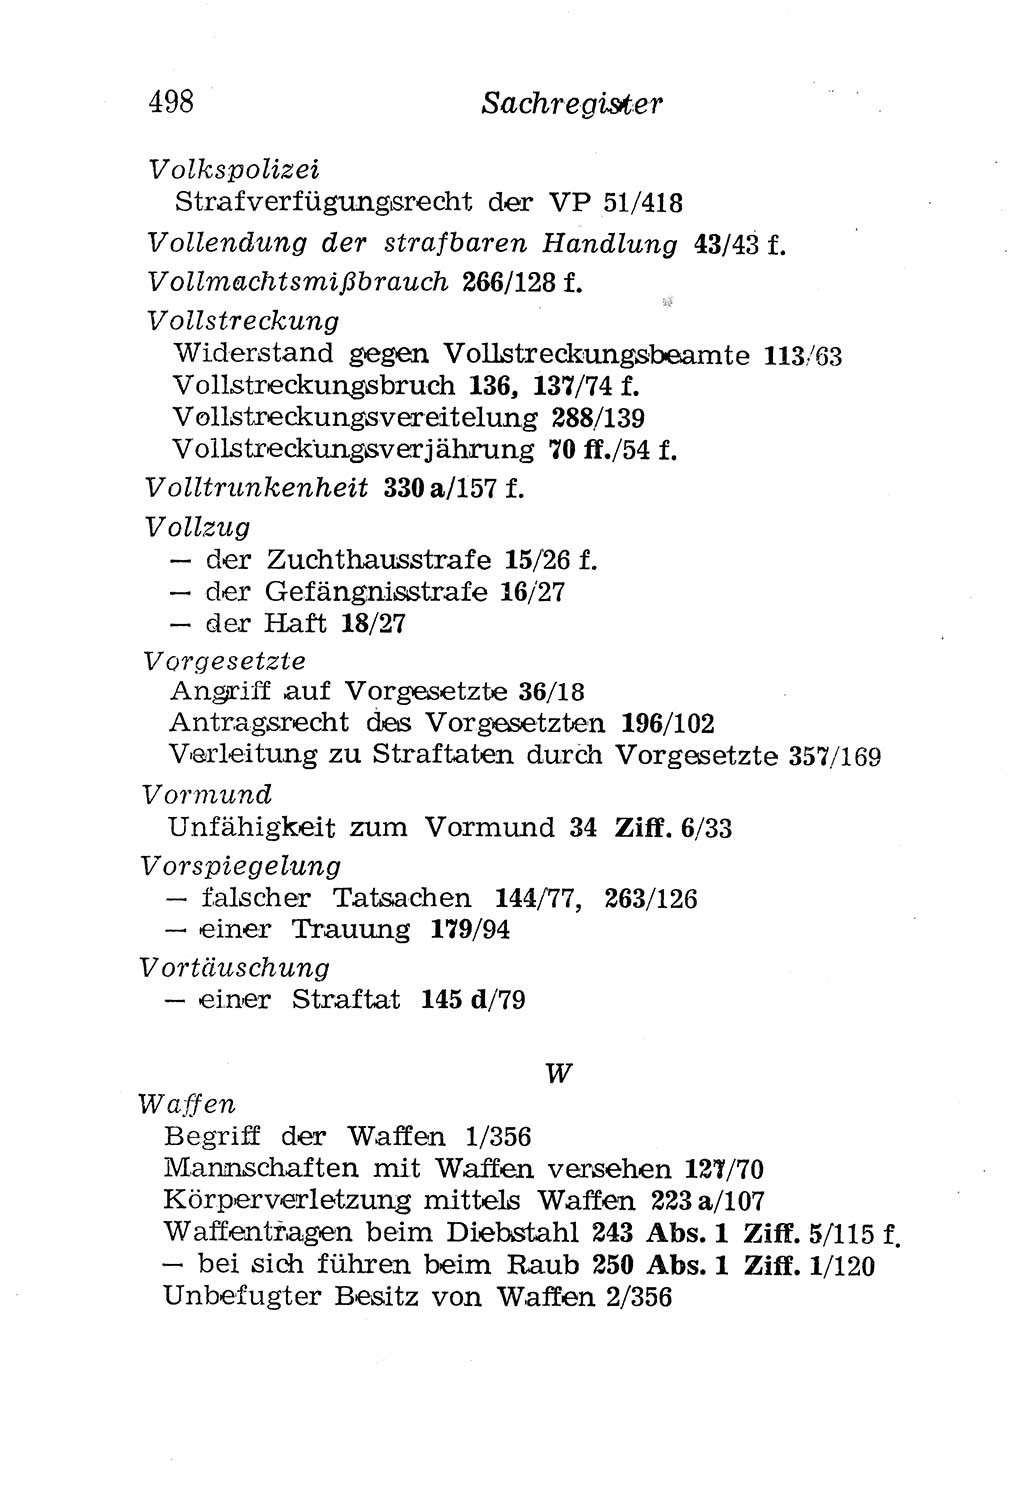 Strafgesetzbuch (StGB) und andere Strafgesetze [Deutsche Demokratische Republik (DDR)] 1958, Seite 498 (StGB Strafges. DDR 1958, S. 498)